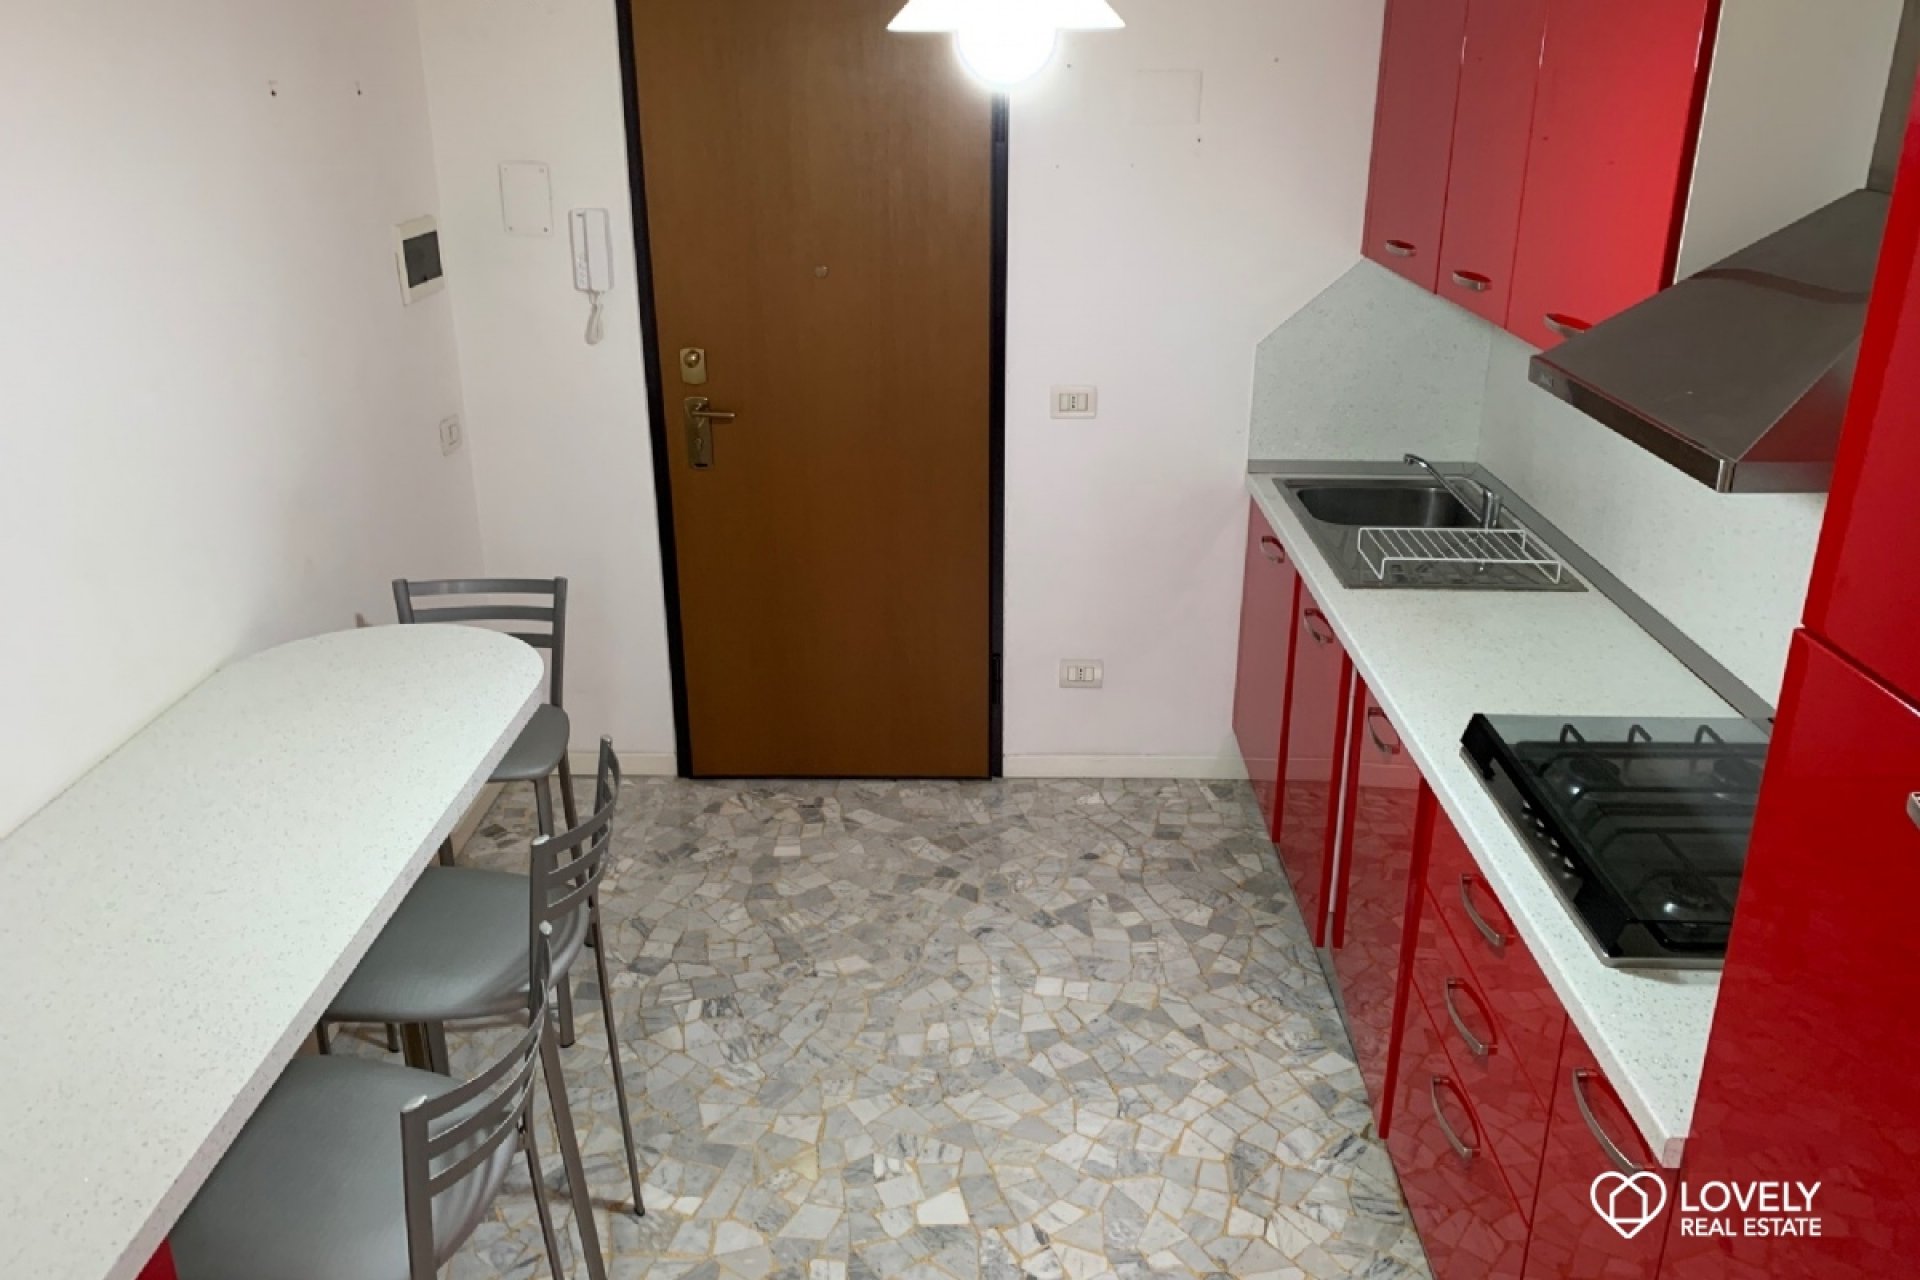 Affitto Appartamento Milano - AMPIO MONOLOCALE CON CUCINA ABITABILE Località Zara - Maciachini - Lancetti